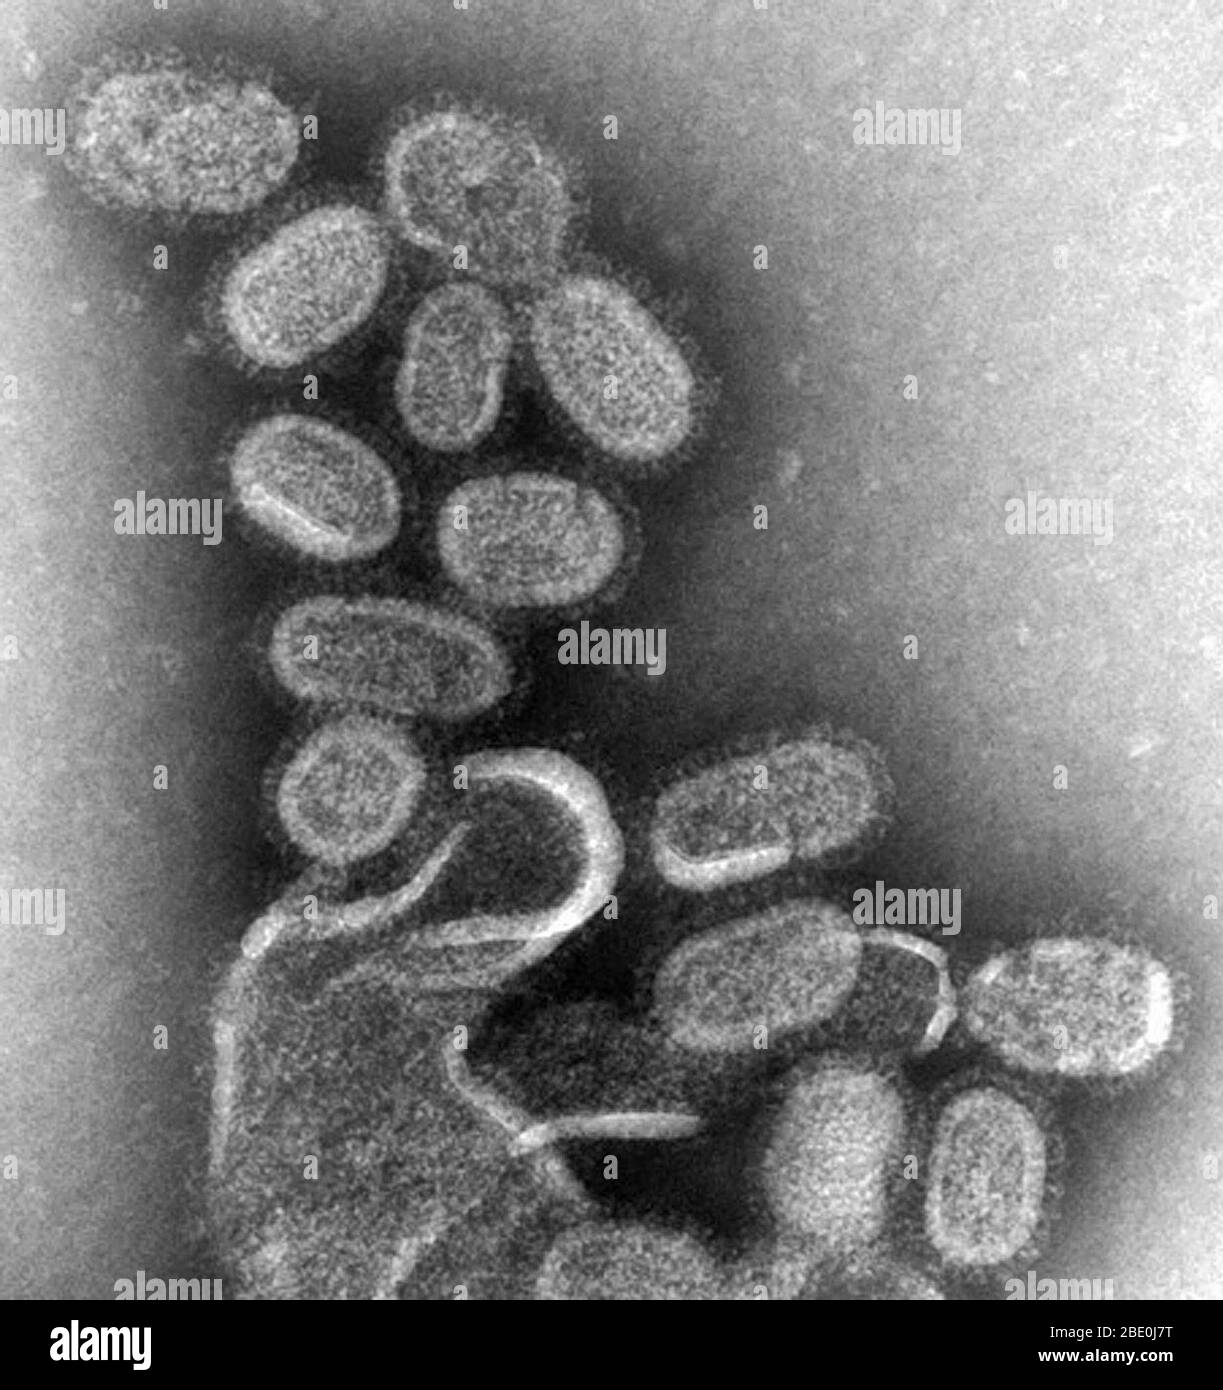 Negativ gefärbte TEM zeigt nachgebildete 1918 Influenza-Virionen, die 1918 Stunden nach der Infektion aus dem Überstand einer 18-infizierten Madin-Darby-Canine-Niere (MDCK)-Zellkultur gewonnen wurden. Um diese Virionen zu sequestieren, wurden die MDCK-Zellen heruntergesponnen (Zentrifugation), und das in der Flüssigkeit vorhandene 1918-Virus wurde für negative Färbung fixiert. Dr. Terrence Tumpey, Mikrobiologe und Mitglied des National Centre for Infectious Diseases (NCID), hat das Influenza-Virus 1918 neu erstellt, um die Eigenschaften zu identifizieren, die diesen Organismus zu einem tödlichen Erreger gemacht haben. Forschungsbemühungen Stockfoto